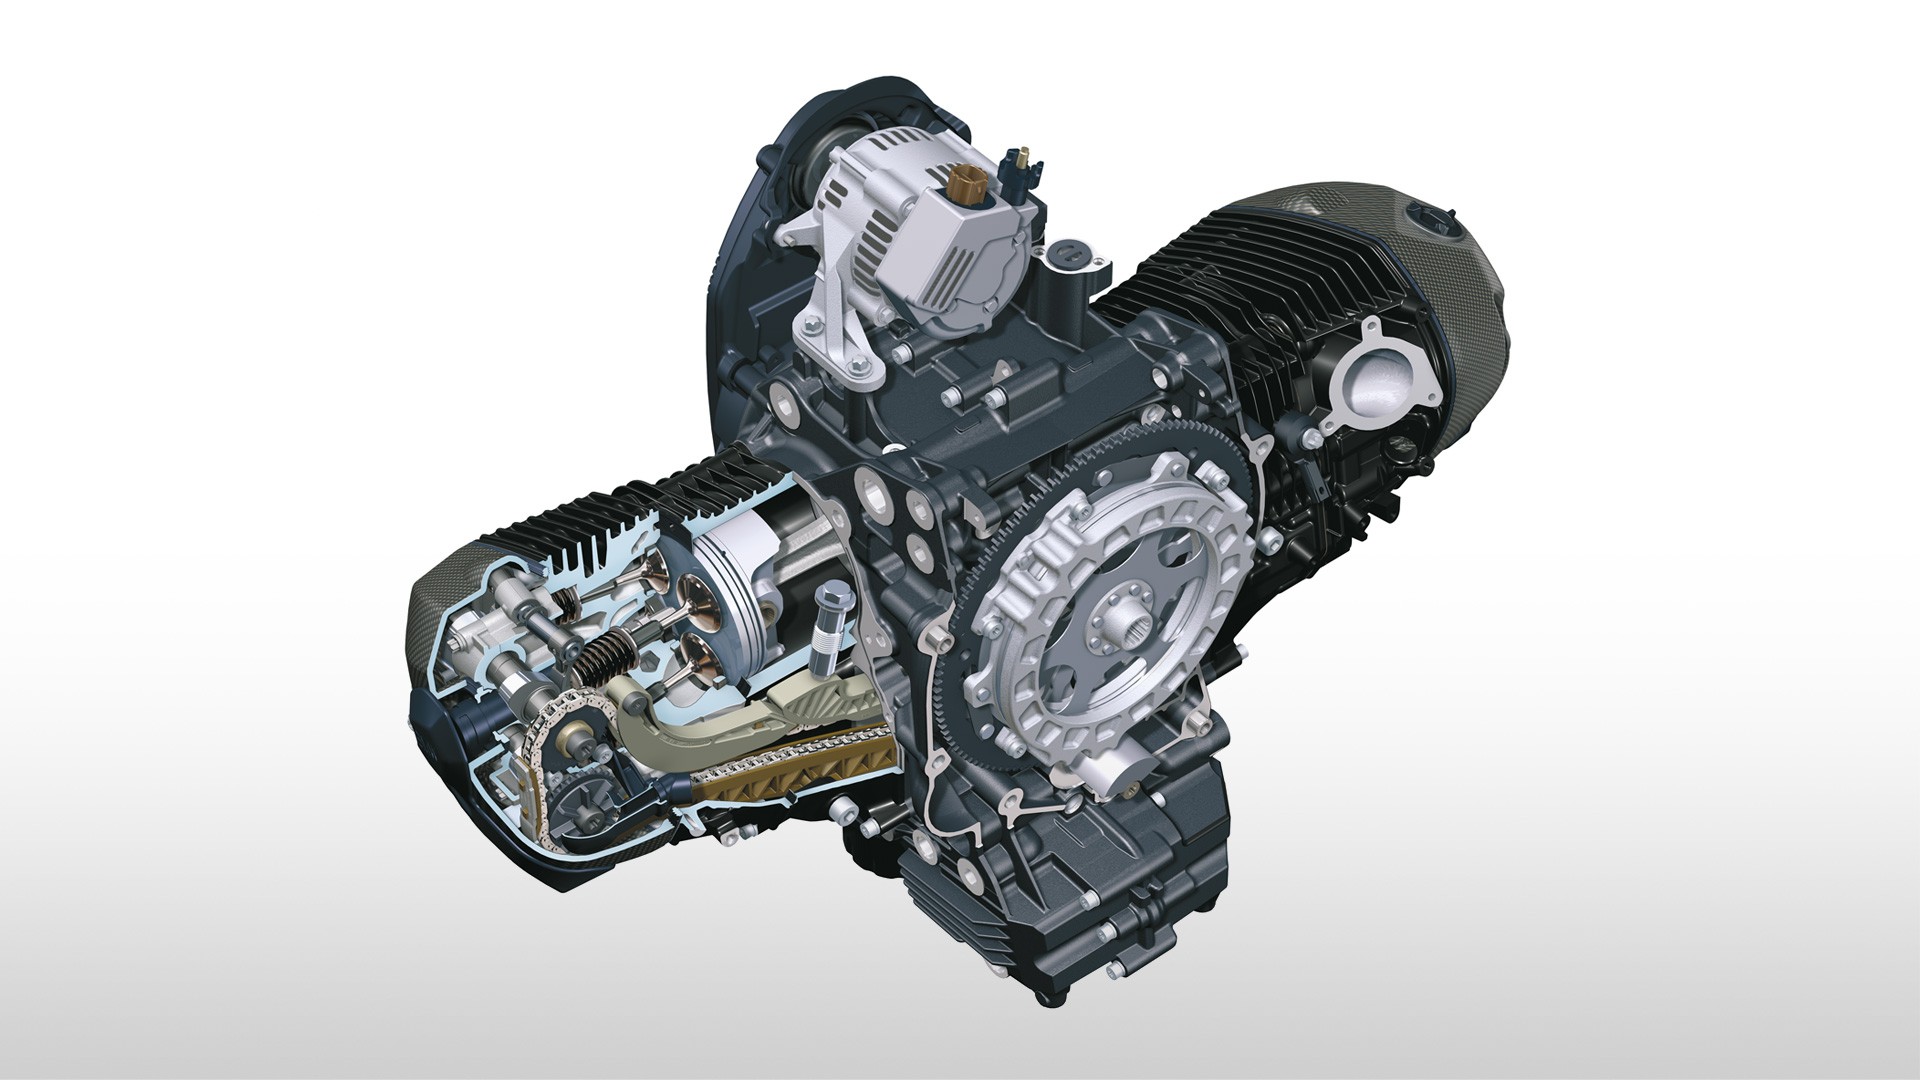 Двигатель оппозит: Плох или хорош оппозитный двигатель? Разбираемся на примере моторов Subaru